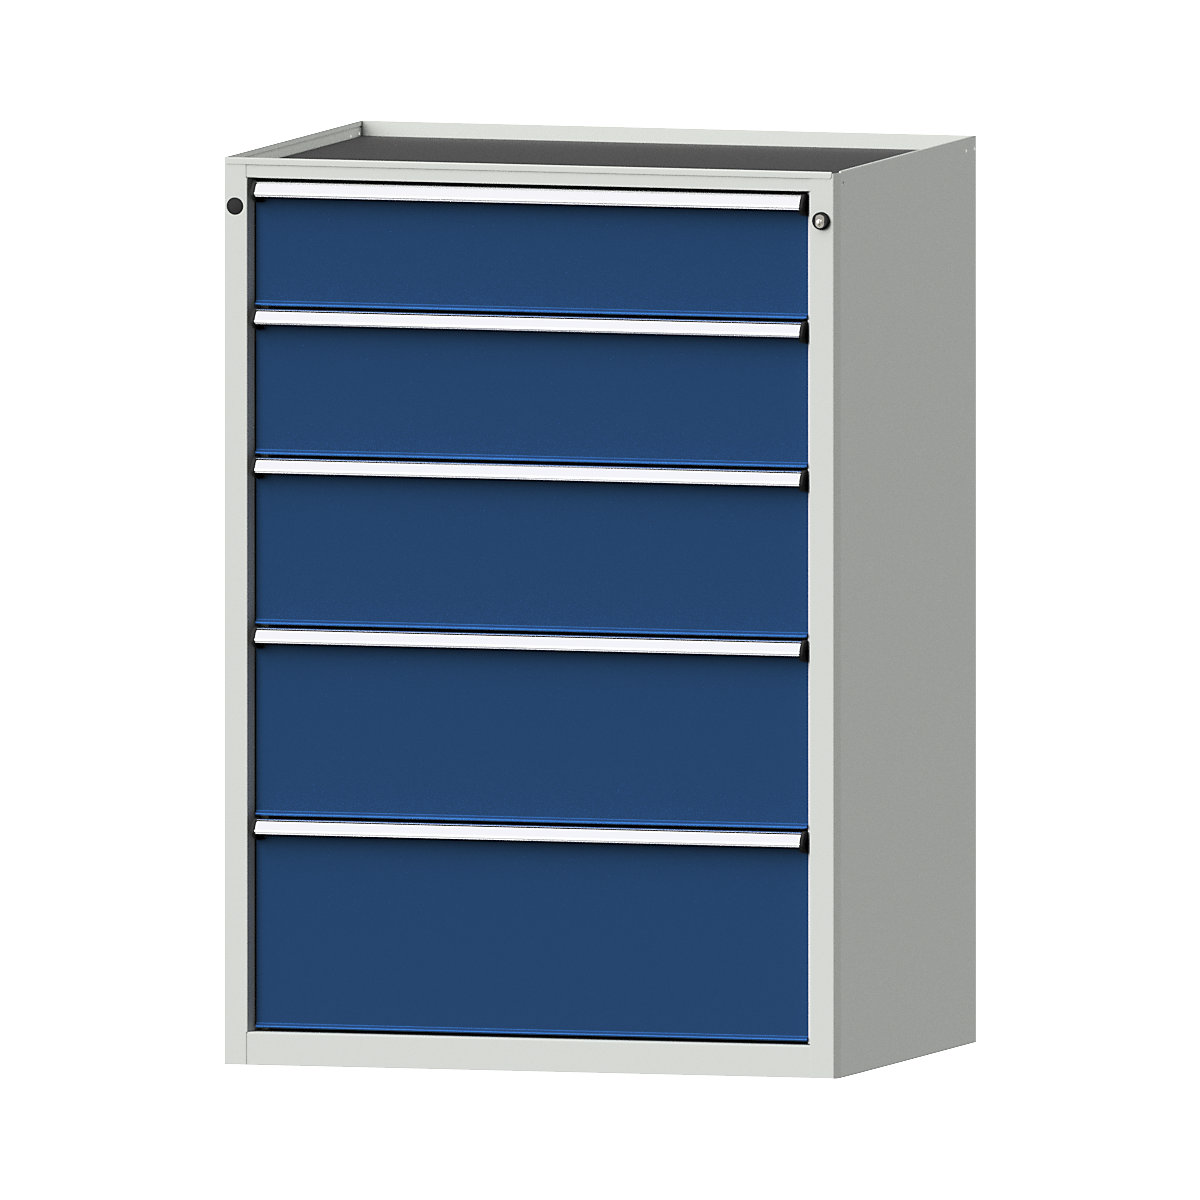 Zásuvková skříň – ANKE, š x h 910 x 675 mm, nosnost zásuvky 200 kg, 5 zásuvek, výška 1280 mm, čelo hořcově modré